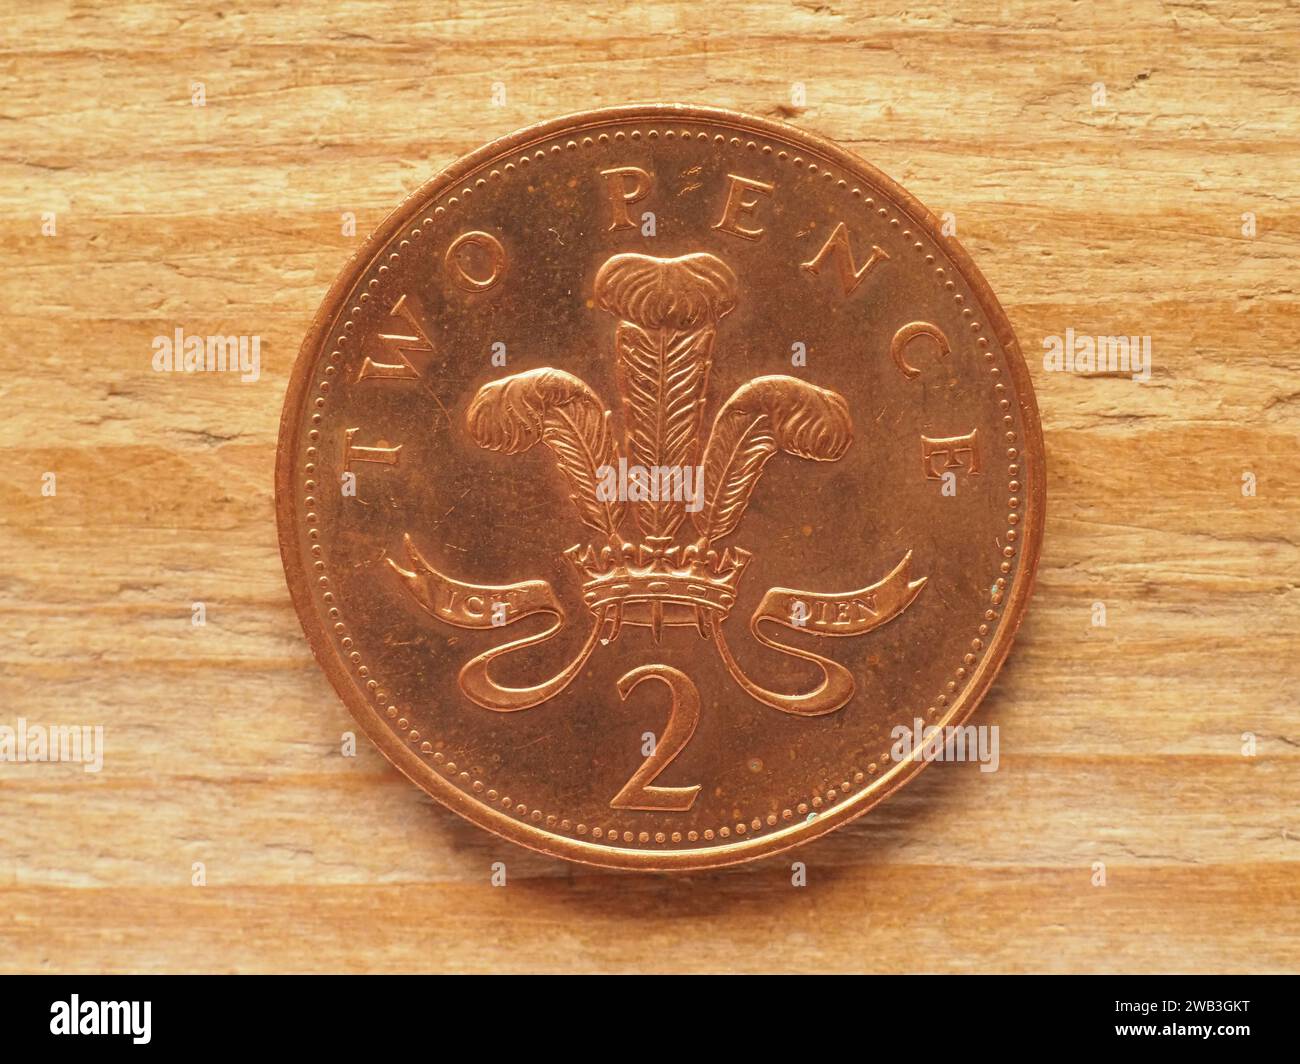 LONDRES, Royaume-Uni - CIRCA 2022 : Two Pence coin Obverse face montrant Un portrait de la reine Elizabeth II, monnaie du Royaume-Uni Banque D'Images